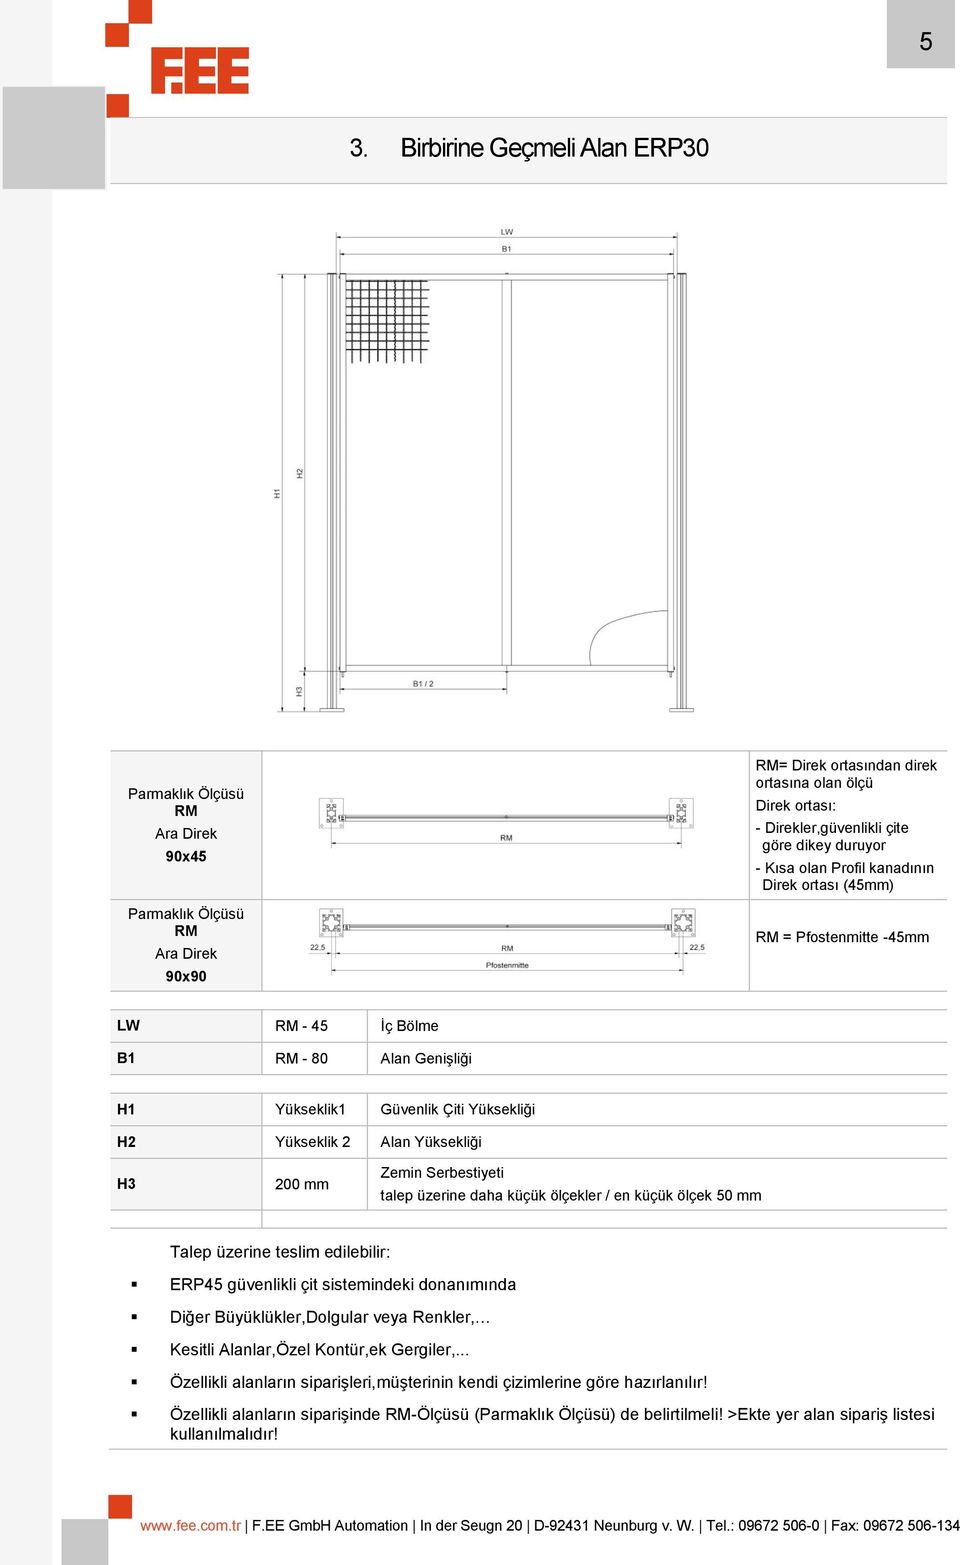 Yüksekliği H3 200 mm Zemin Serbestiyeti talep üzerine daha küçük ölçekler / en küçük ölçek 50 mm Talep üzerine teslim edilebilir: ERP45 güvenlikli çit sistemindeki donanımında Diğer